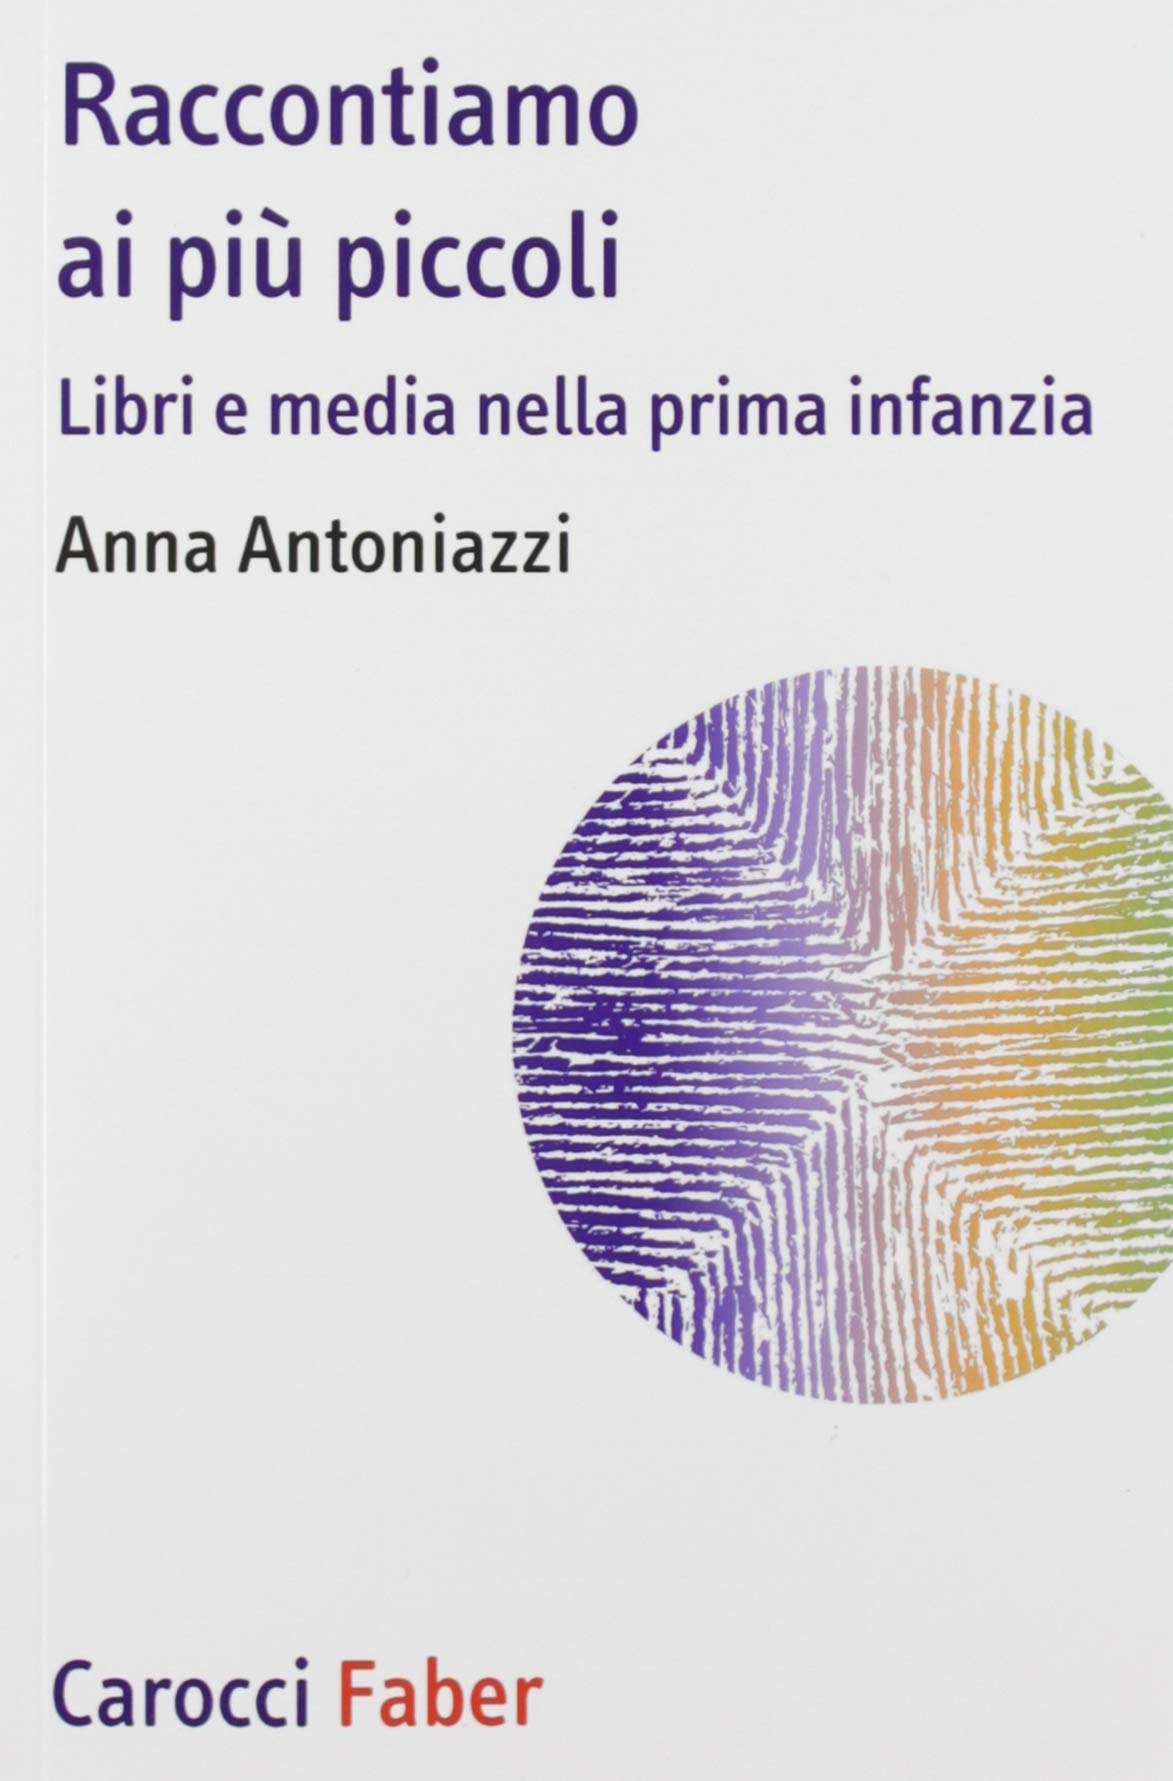 Raccontiamo ai più piccoli (2019) di Anna Antoniazzi – Recensione